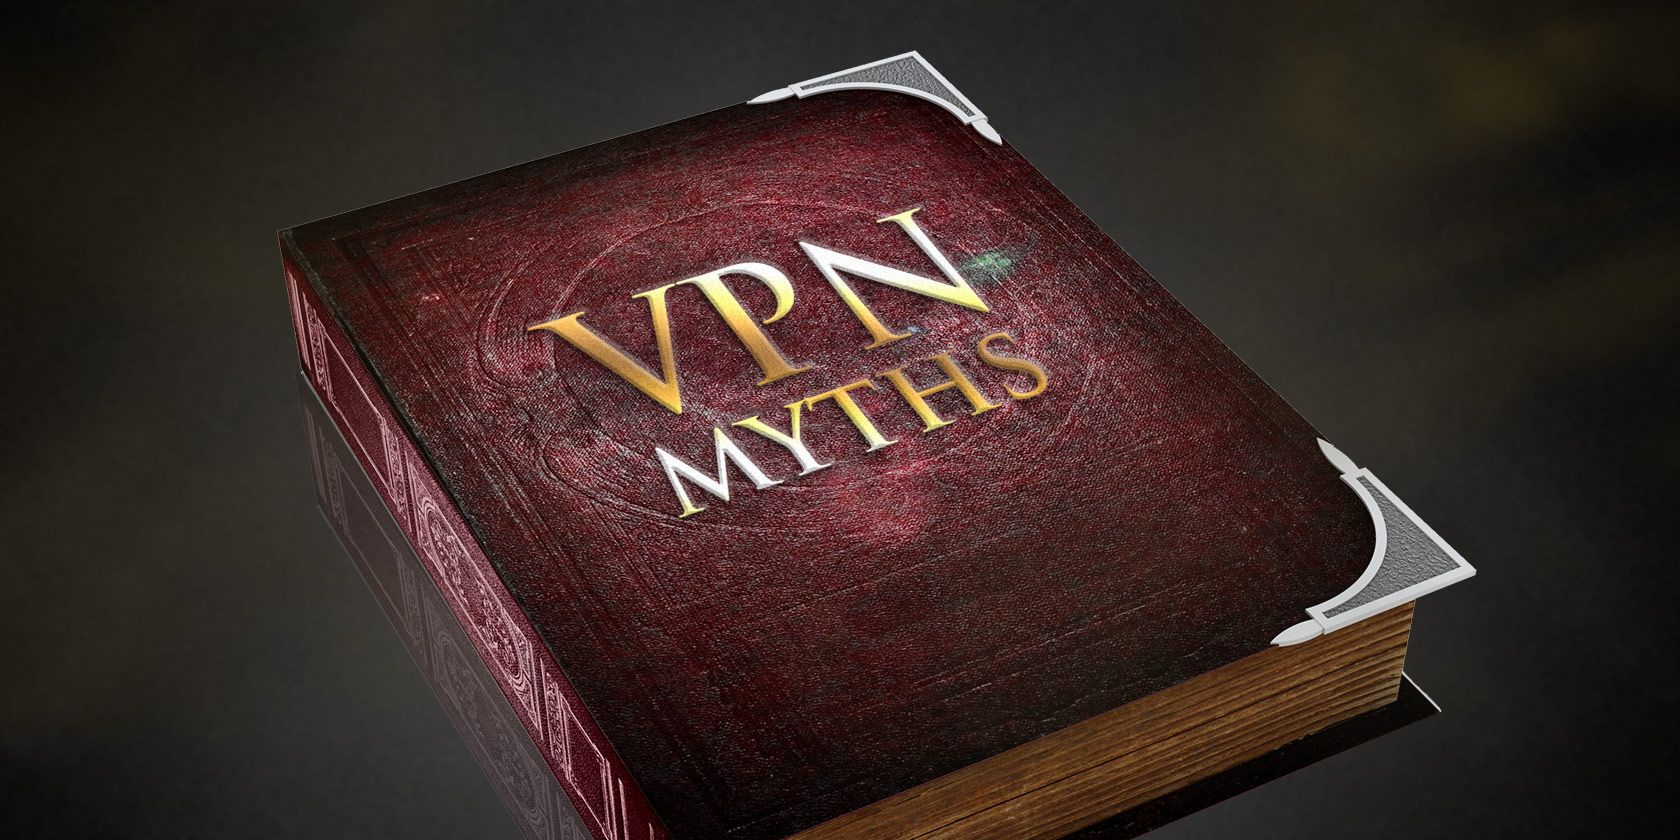 vpn-myths